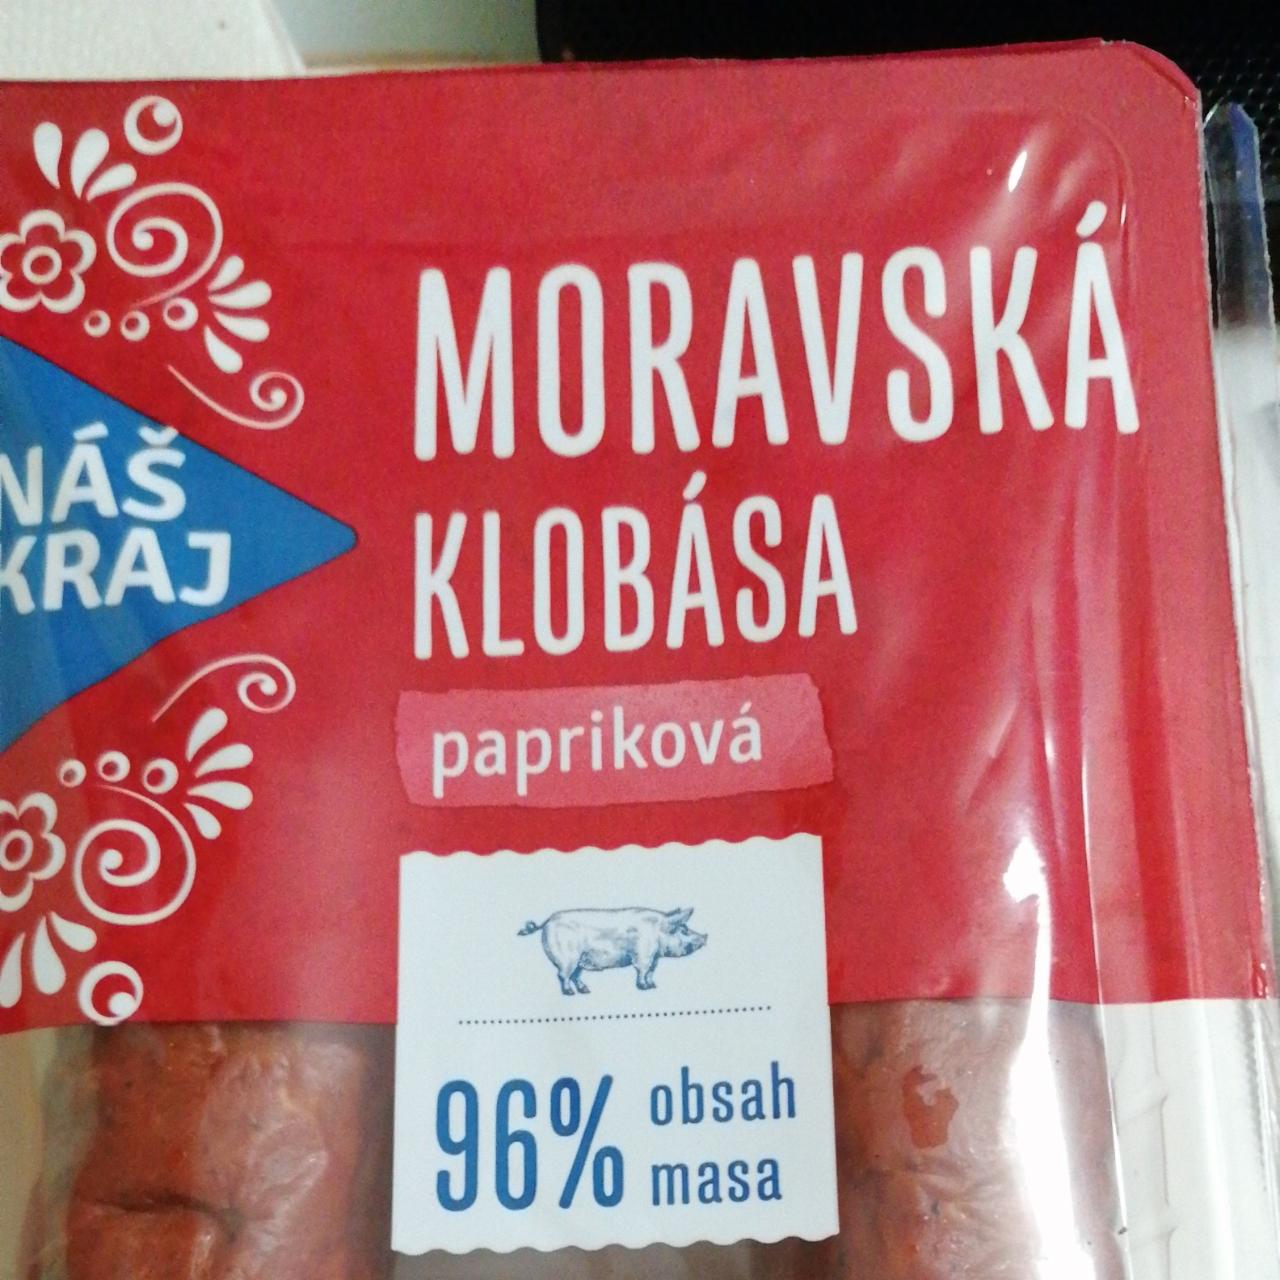 Fotografie - Moravská klobása papriková Náš kraj